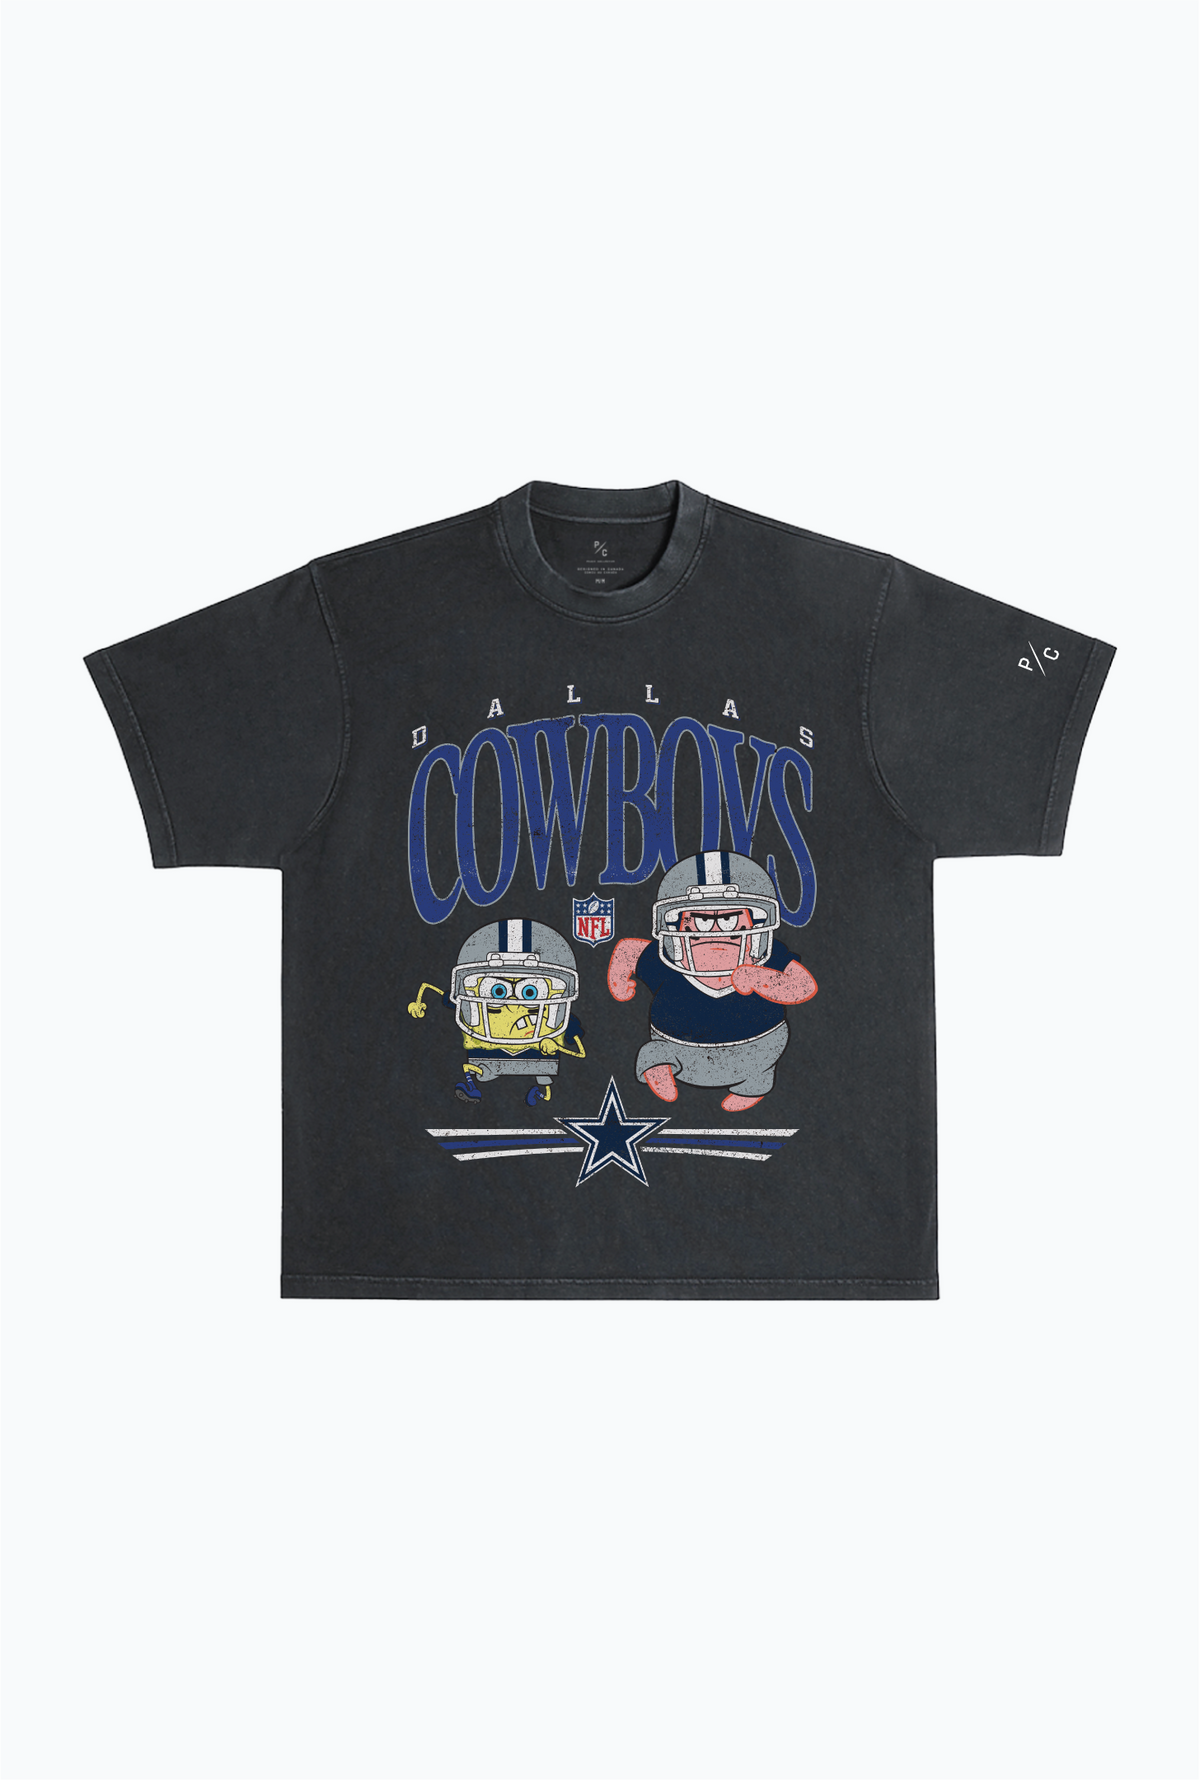 Spongebob & Patrick Rush Heavy Pigment Dye T-Shirt - Dallas Cowboys